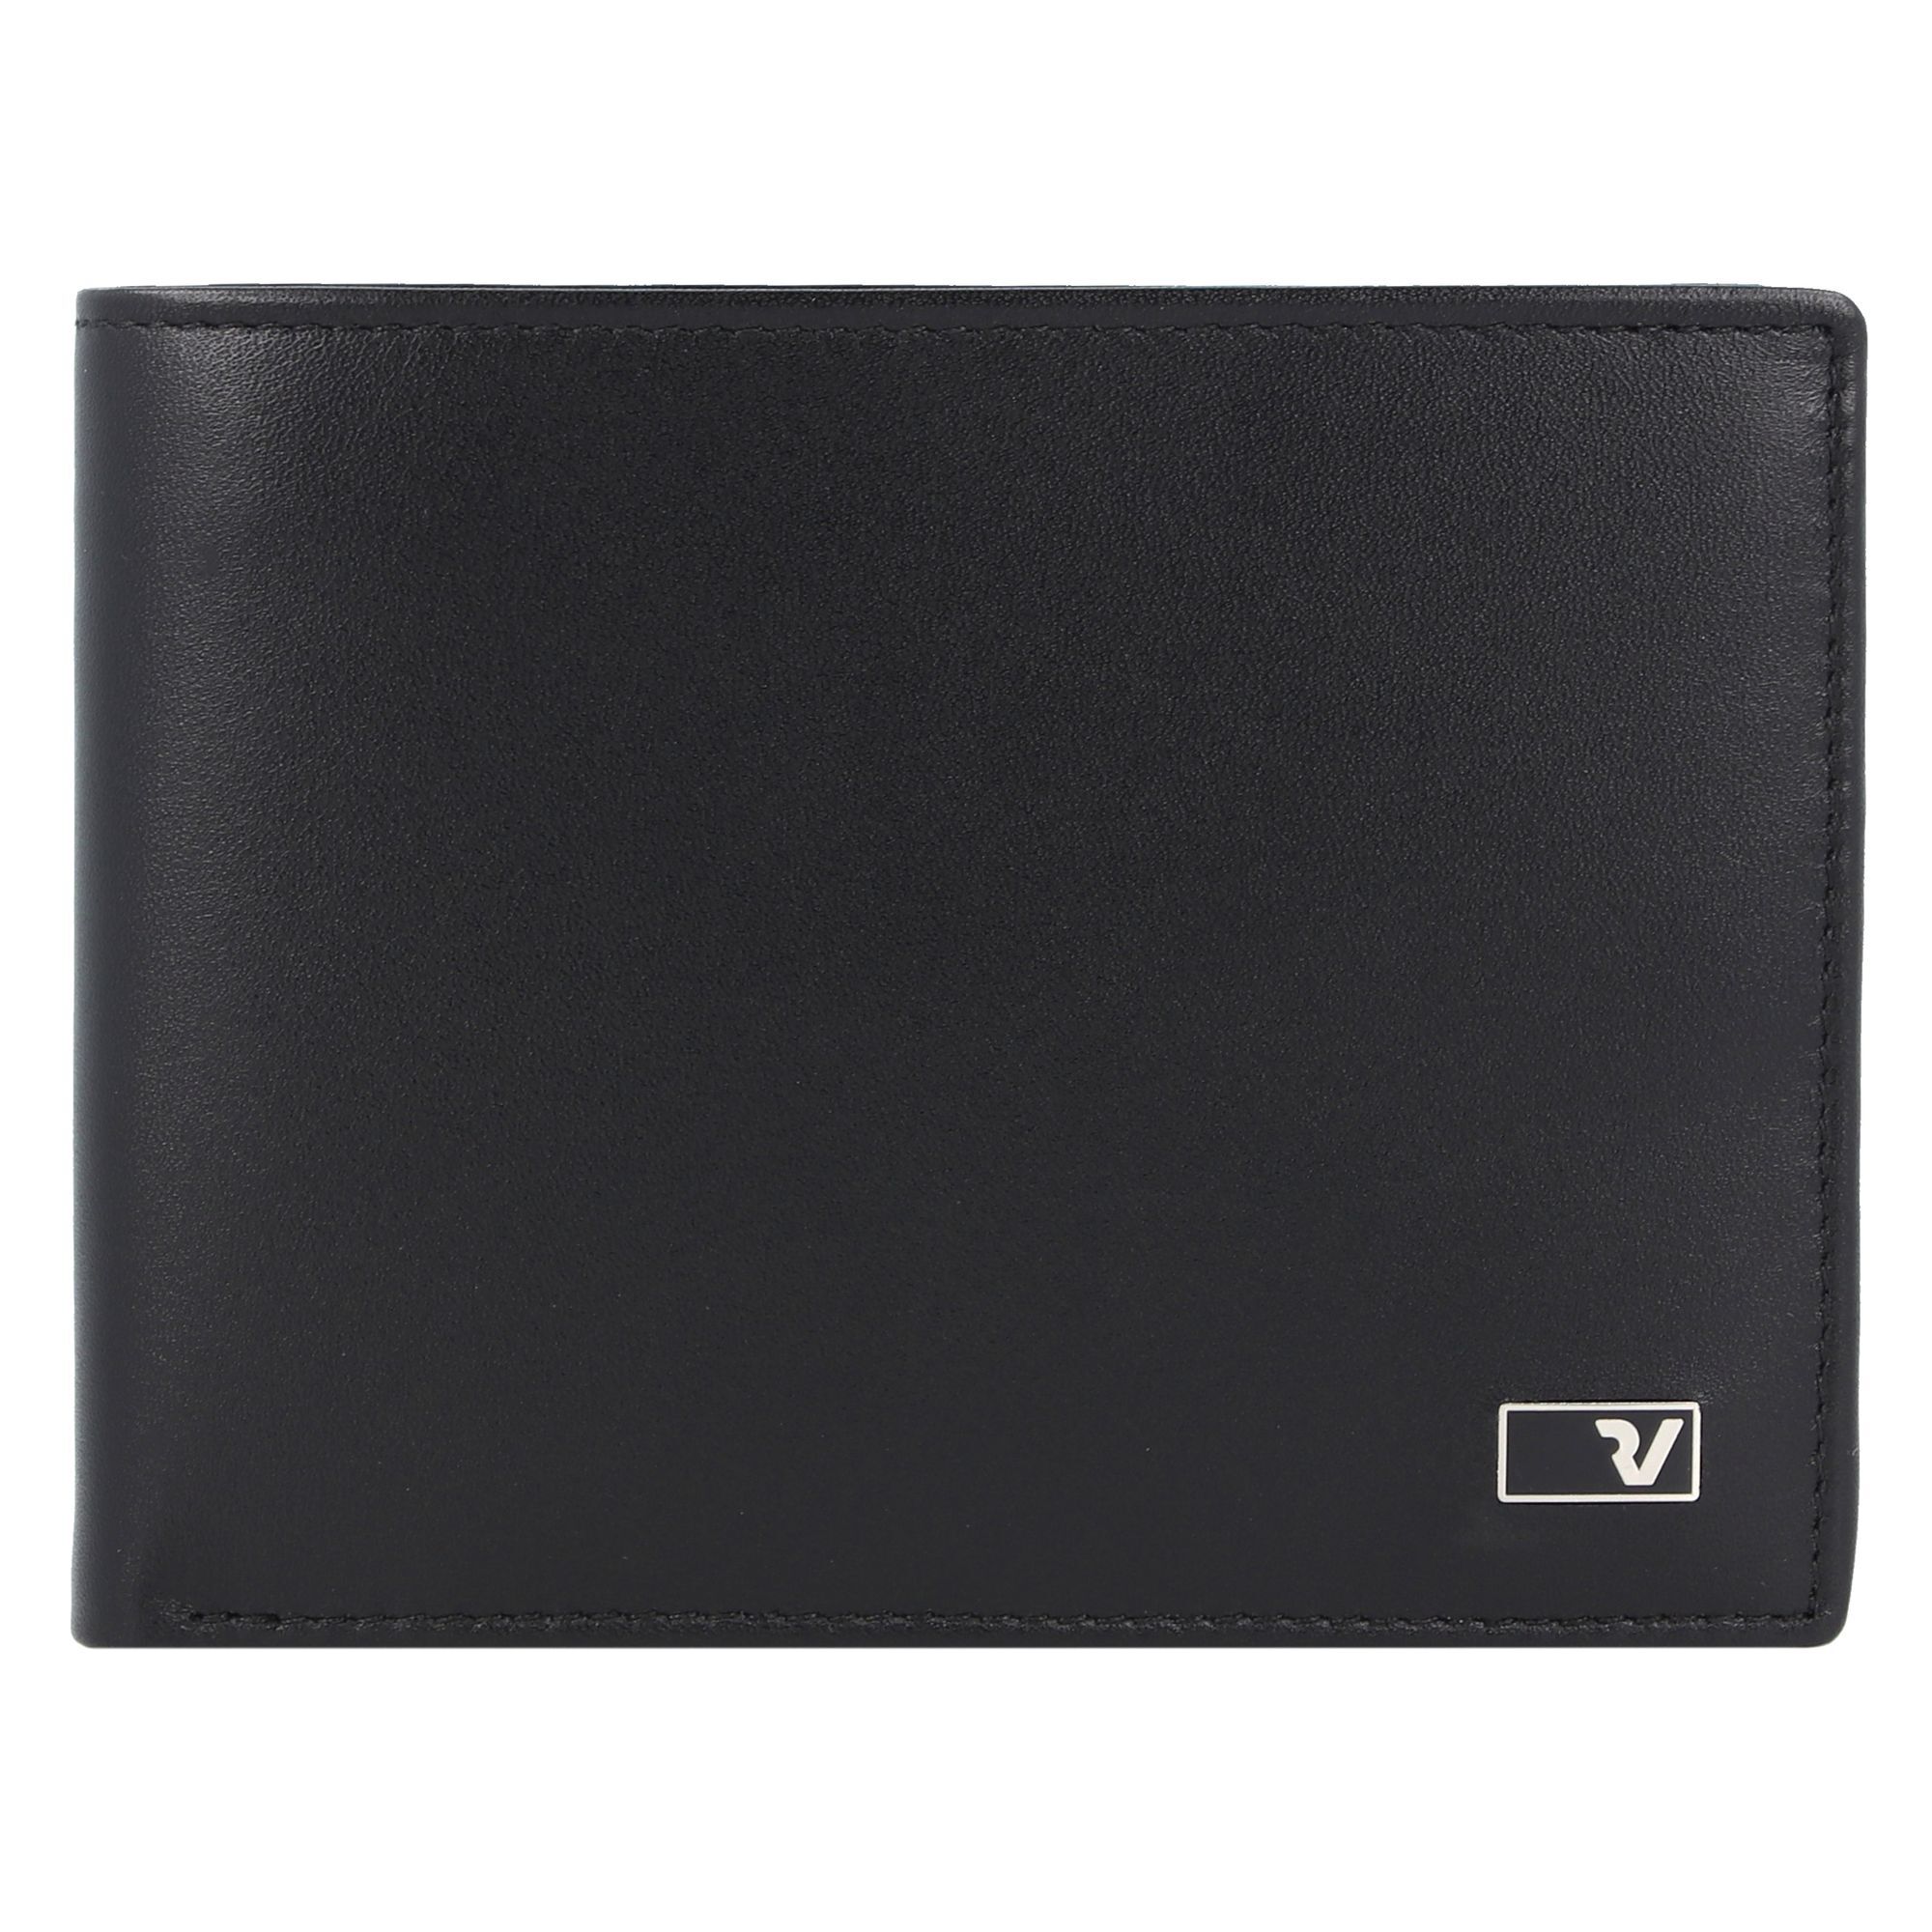 Кошелек Roncato Firenze RFID Leder 12 см, черный